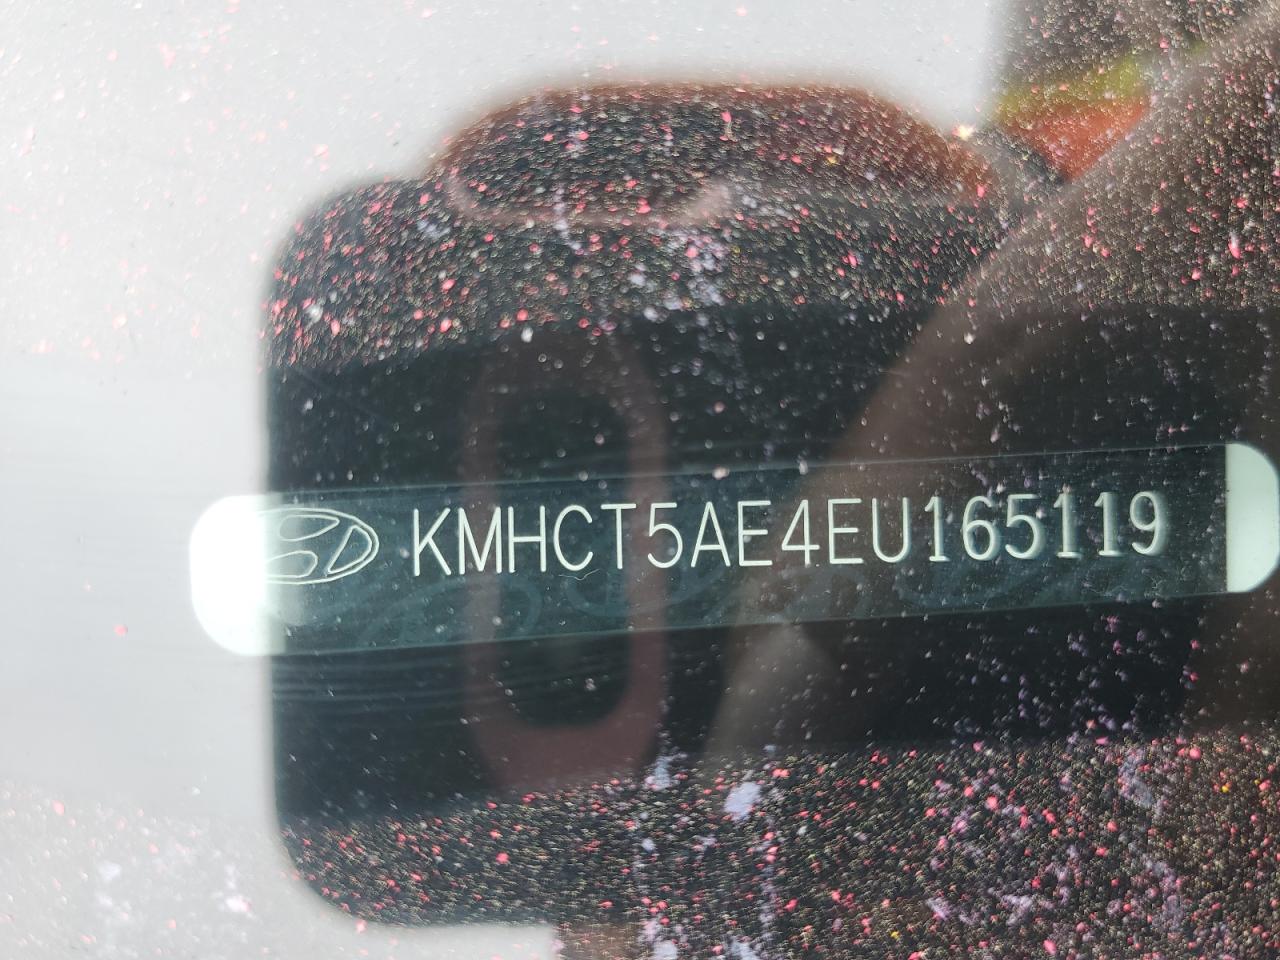 2014 Hyundai Accent Gls vin: KMHCT5AE4EU165119